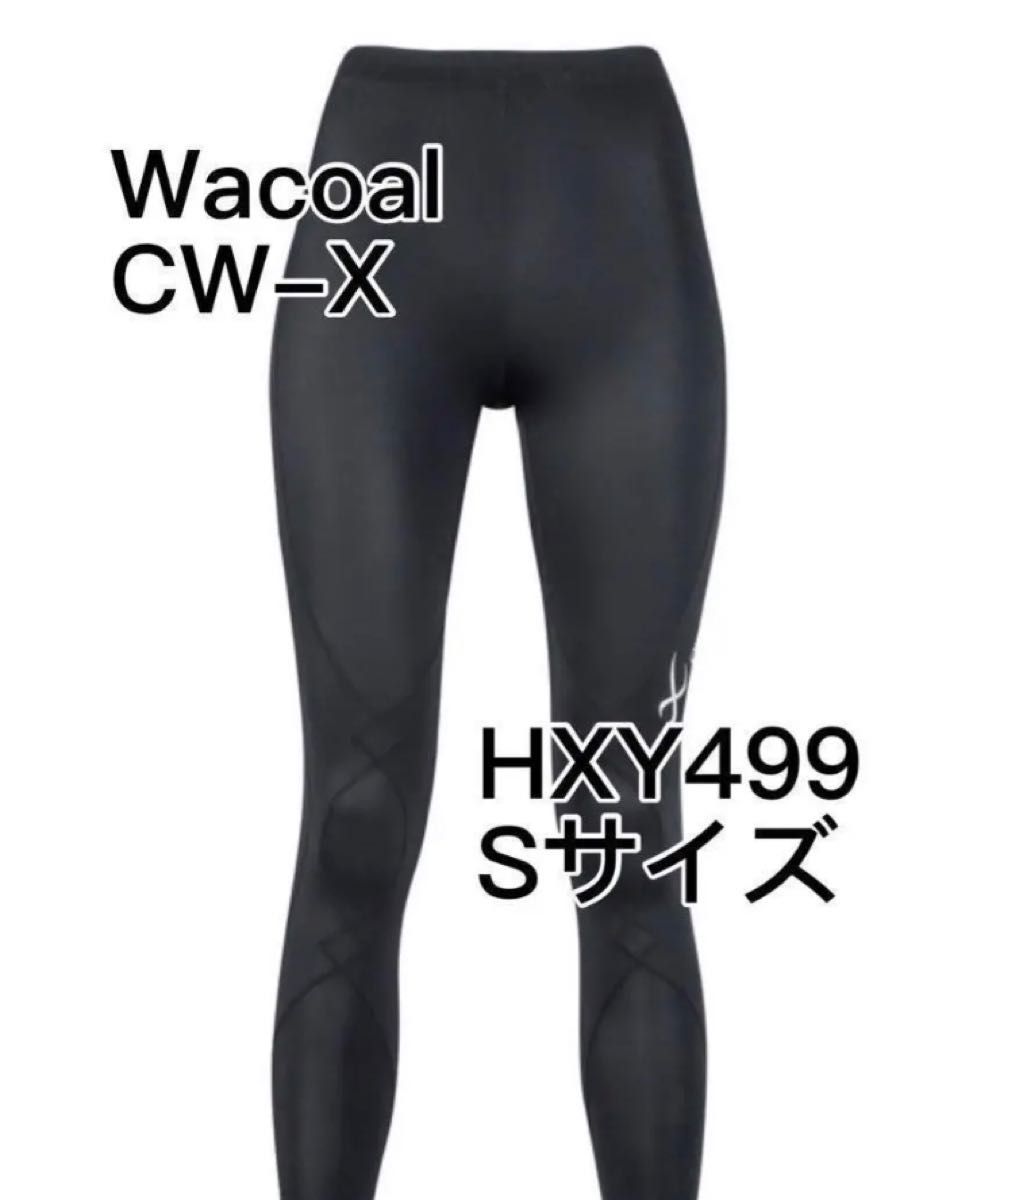 CW-X レディススポーツタイツ エキスパートモデル3.0 股関節 HXY499